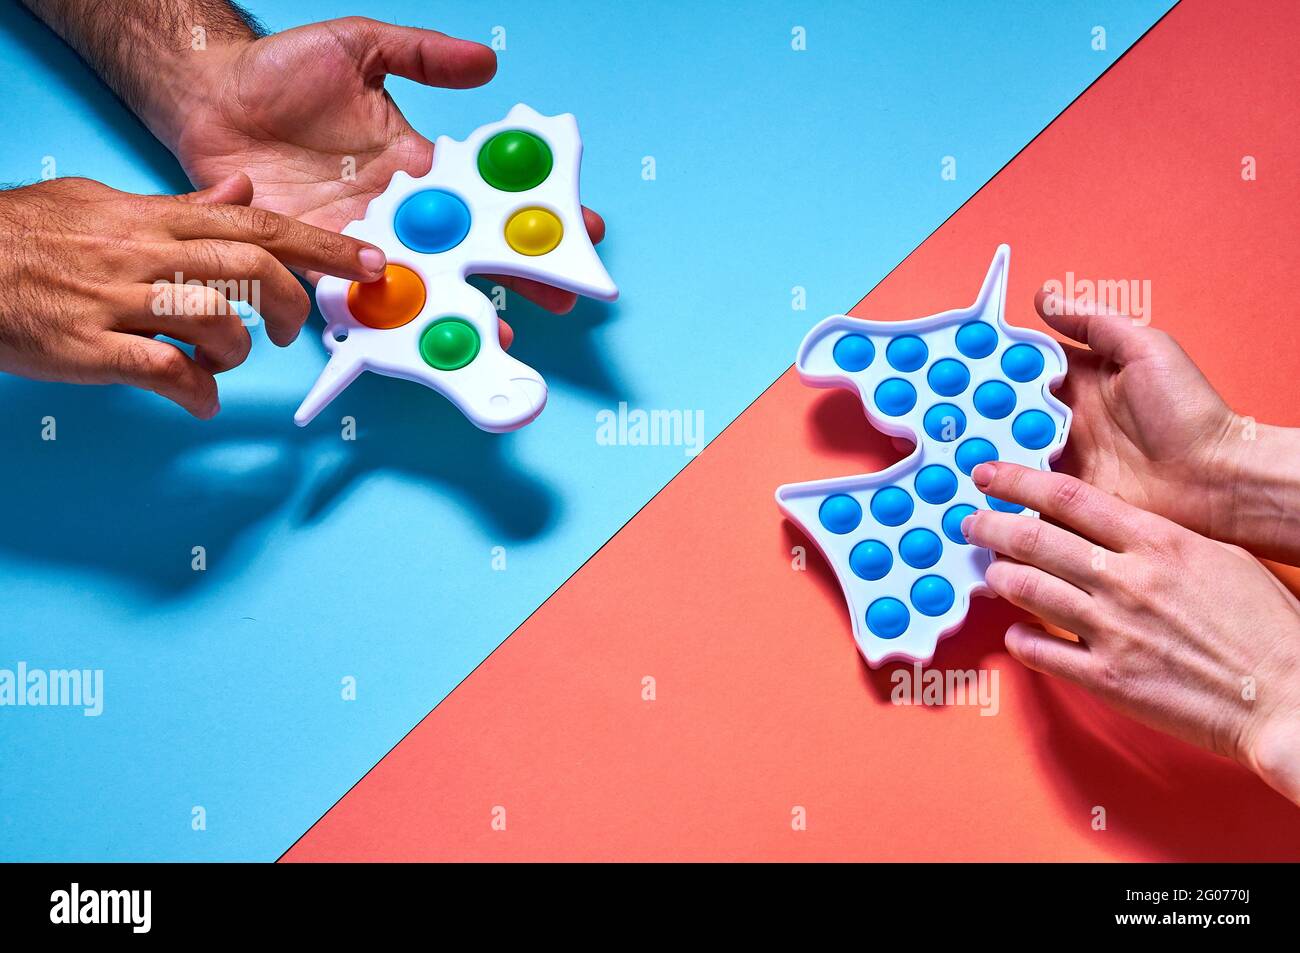 Le mani di uomo e donna si allungano verso i giocattoli colorati trendy e semplici, a concavità su sfondo blu. Foto Stock